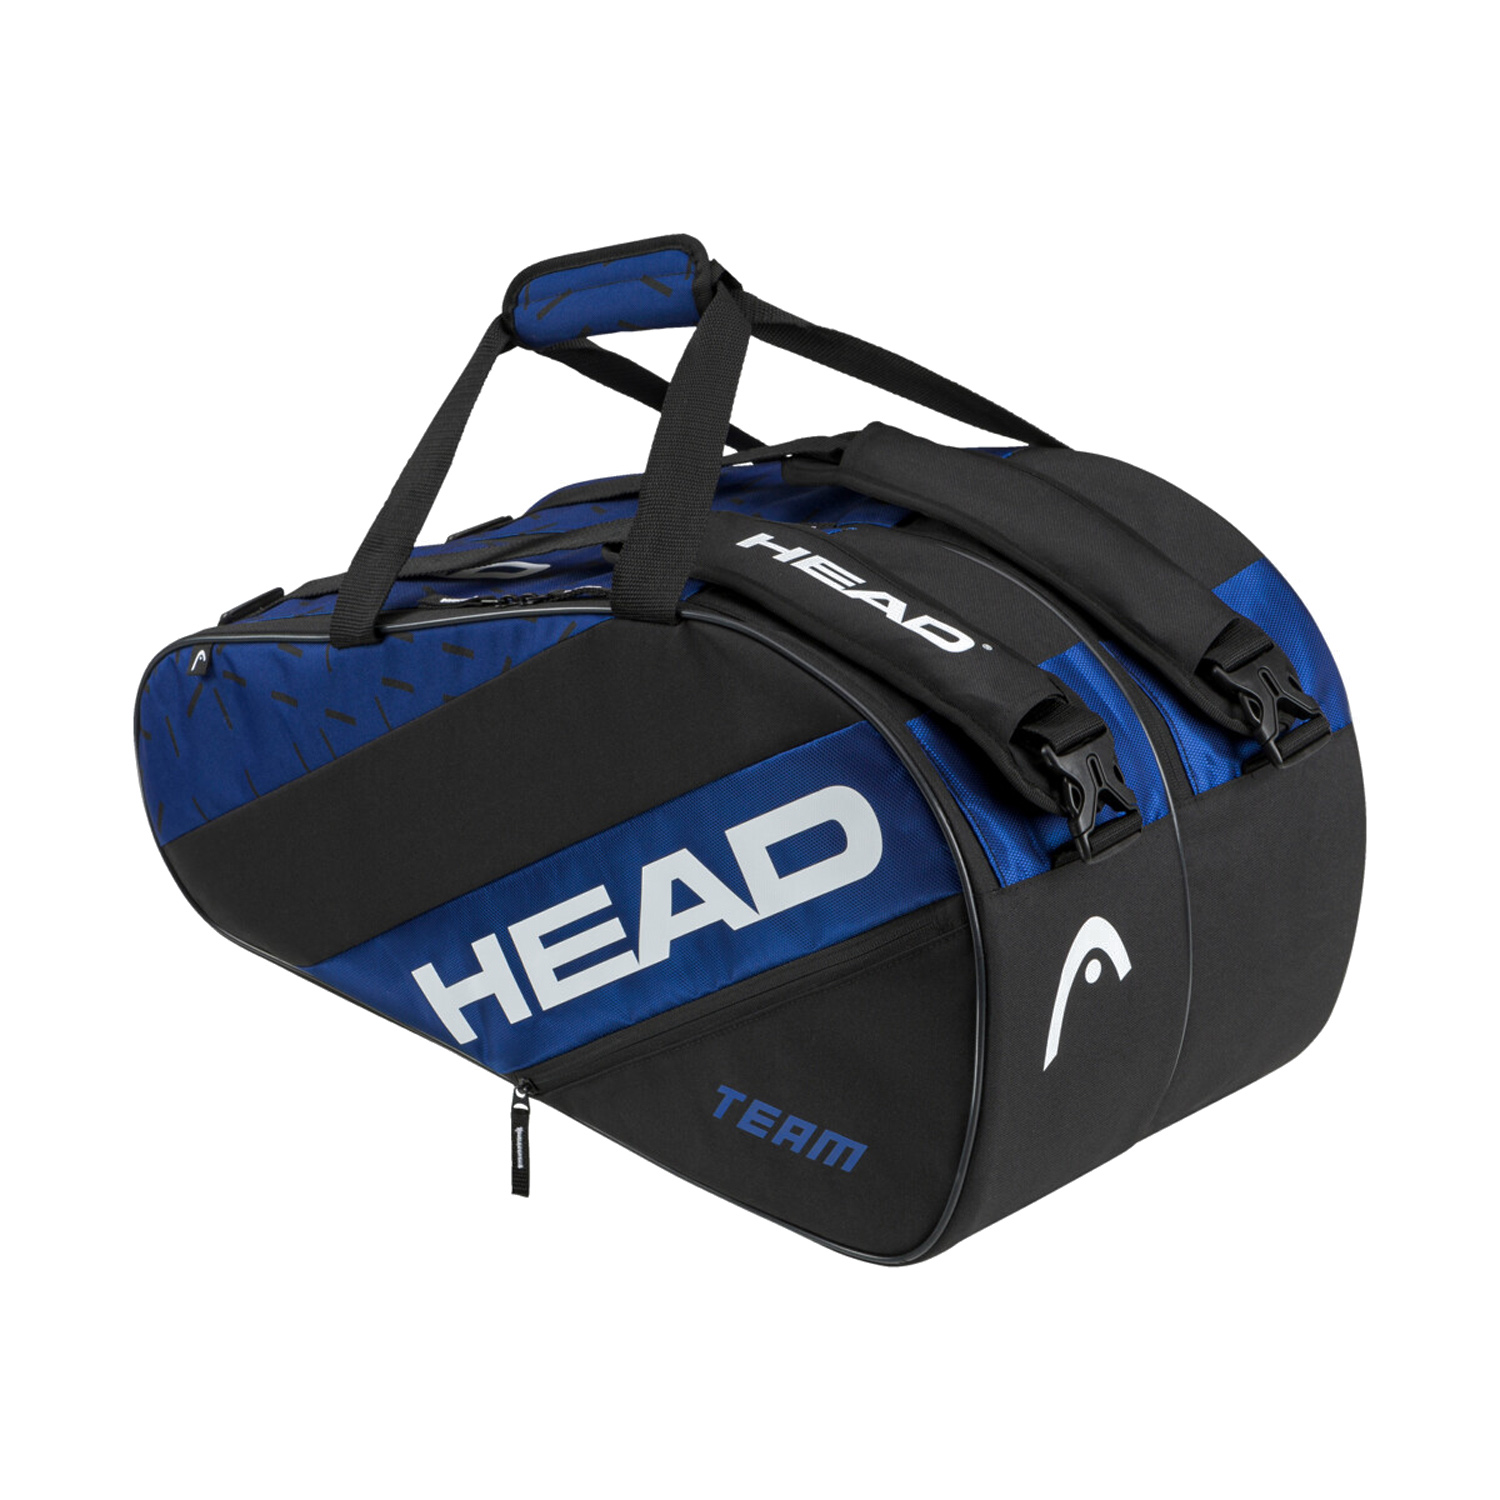 Head Team Large Bag - Blue/Black